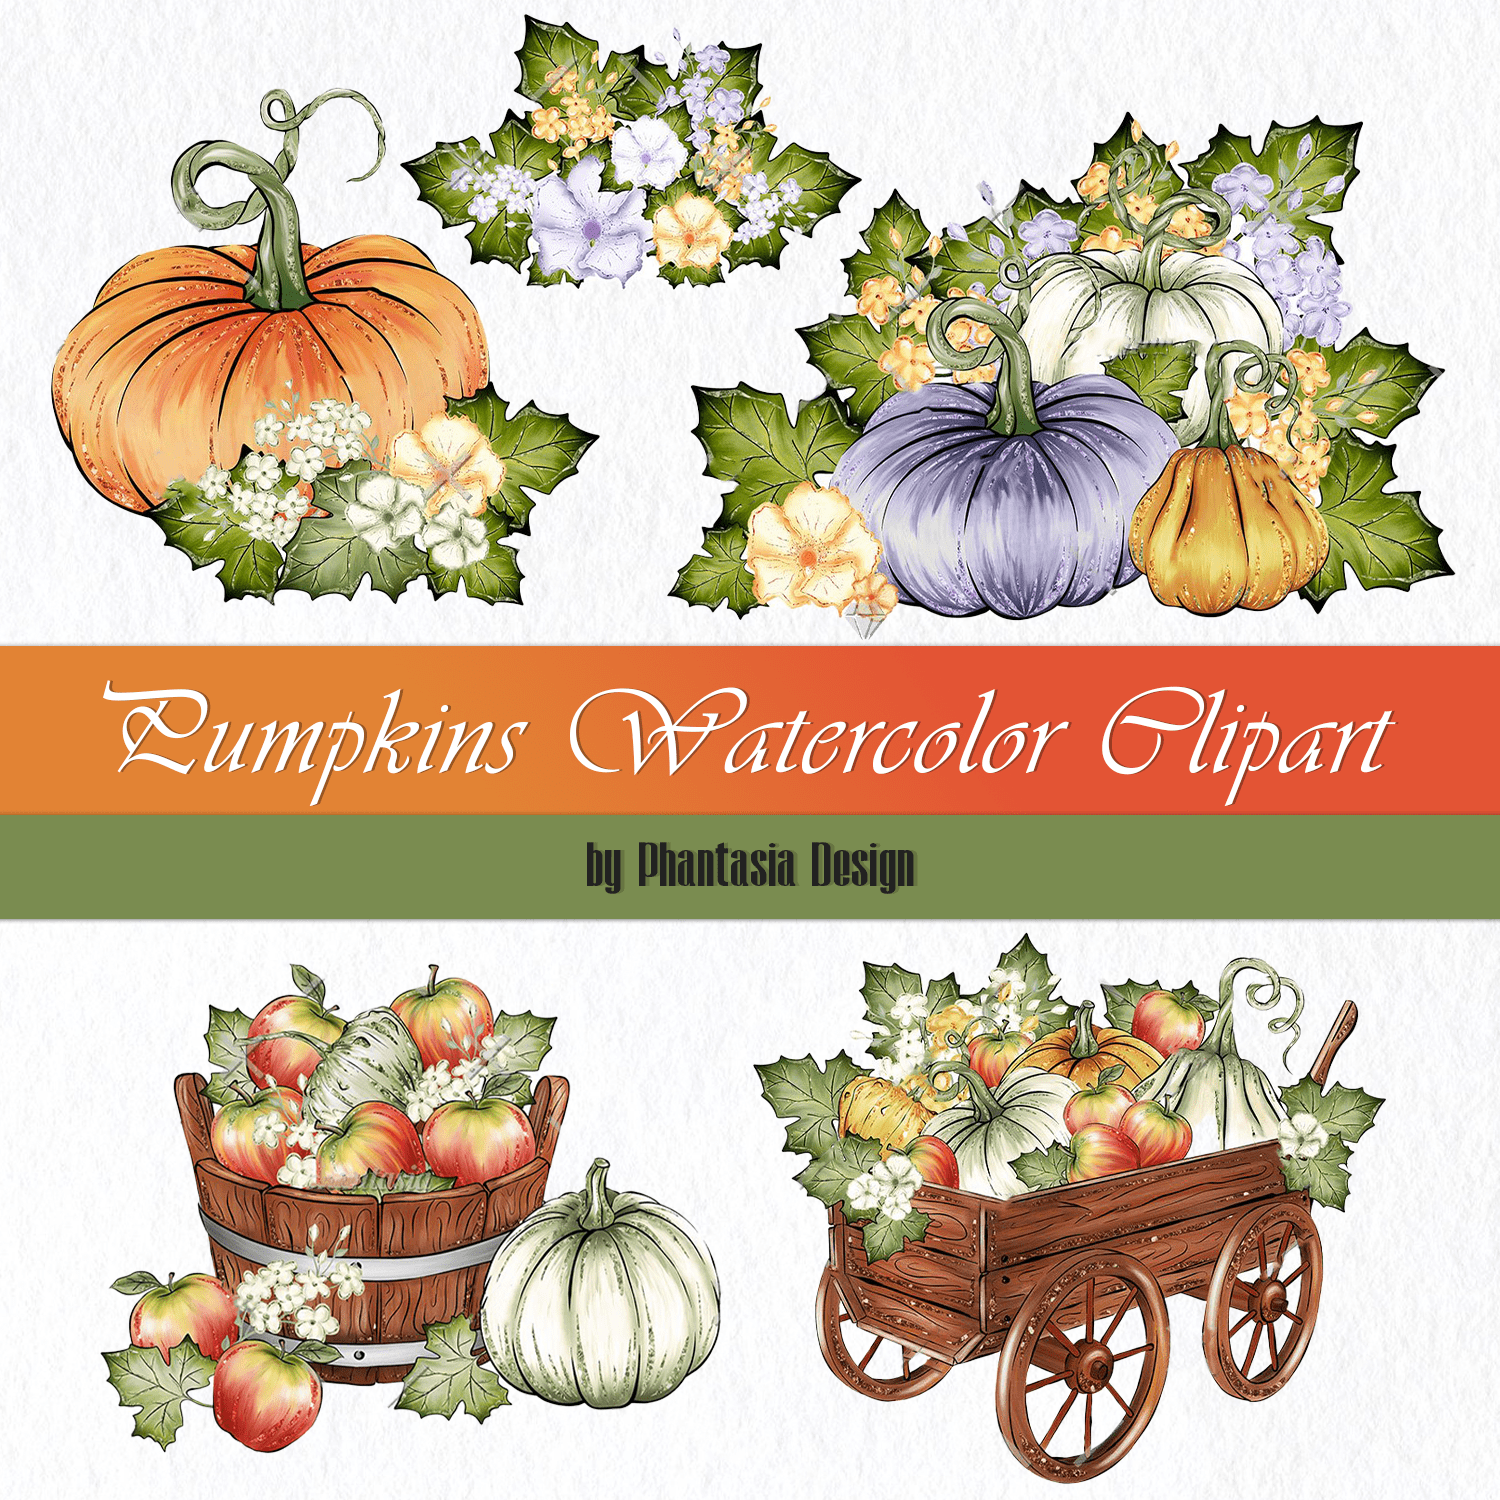 Pumpkins Watercolor Clipart cover.